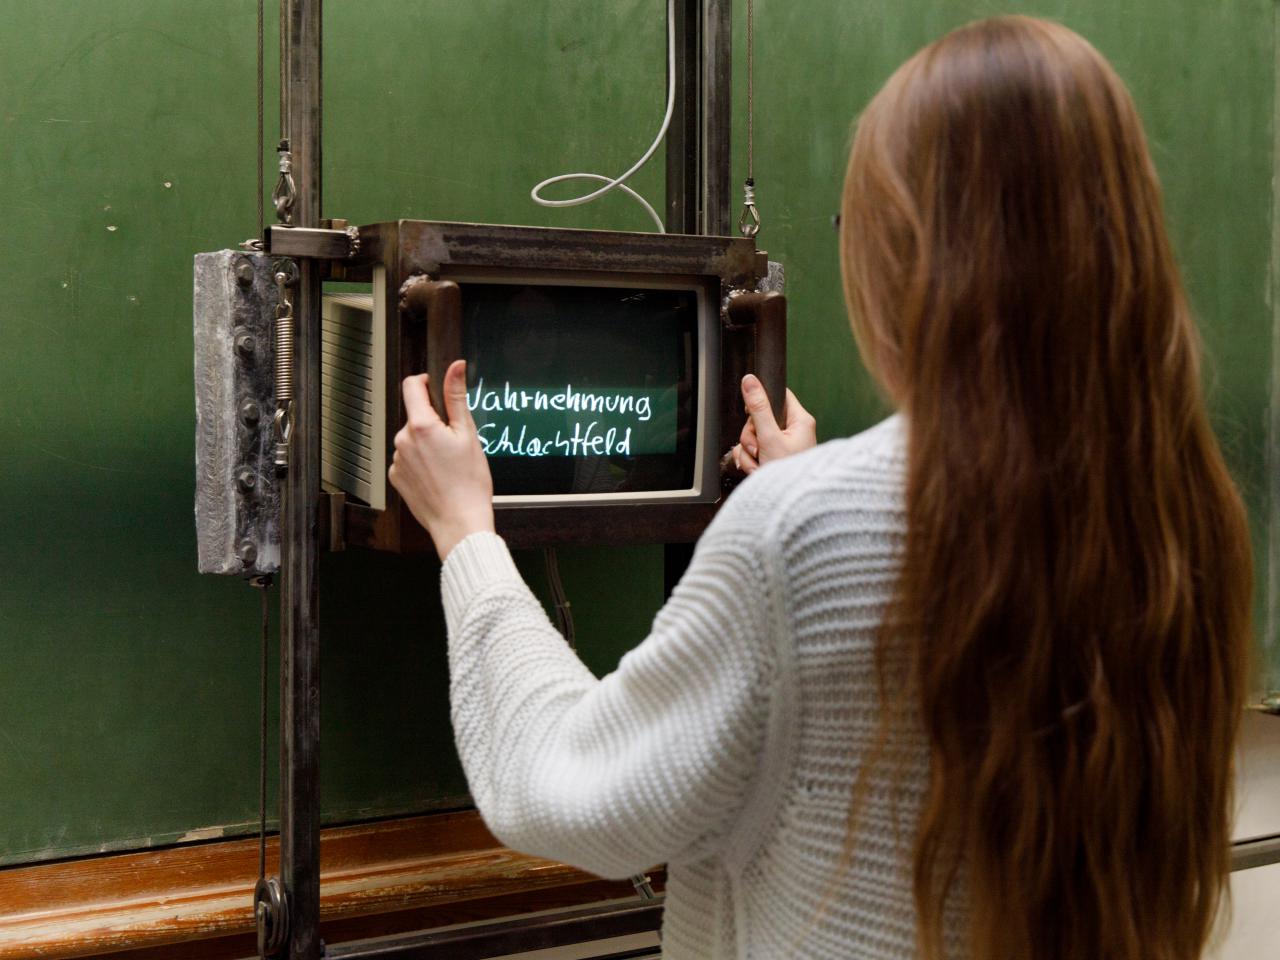 Besucherin vor Fietzeks »Tafel«, eine leere grüne Schultafel, auf der mit Hilfe eines Monitors zuvor unsichtbare Texte auftauchen.